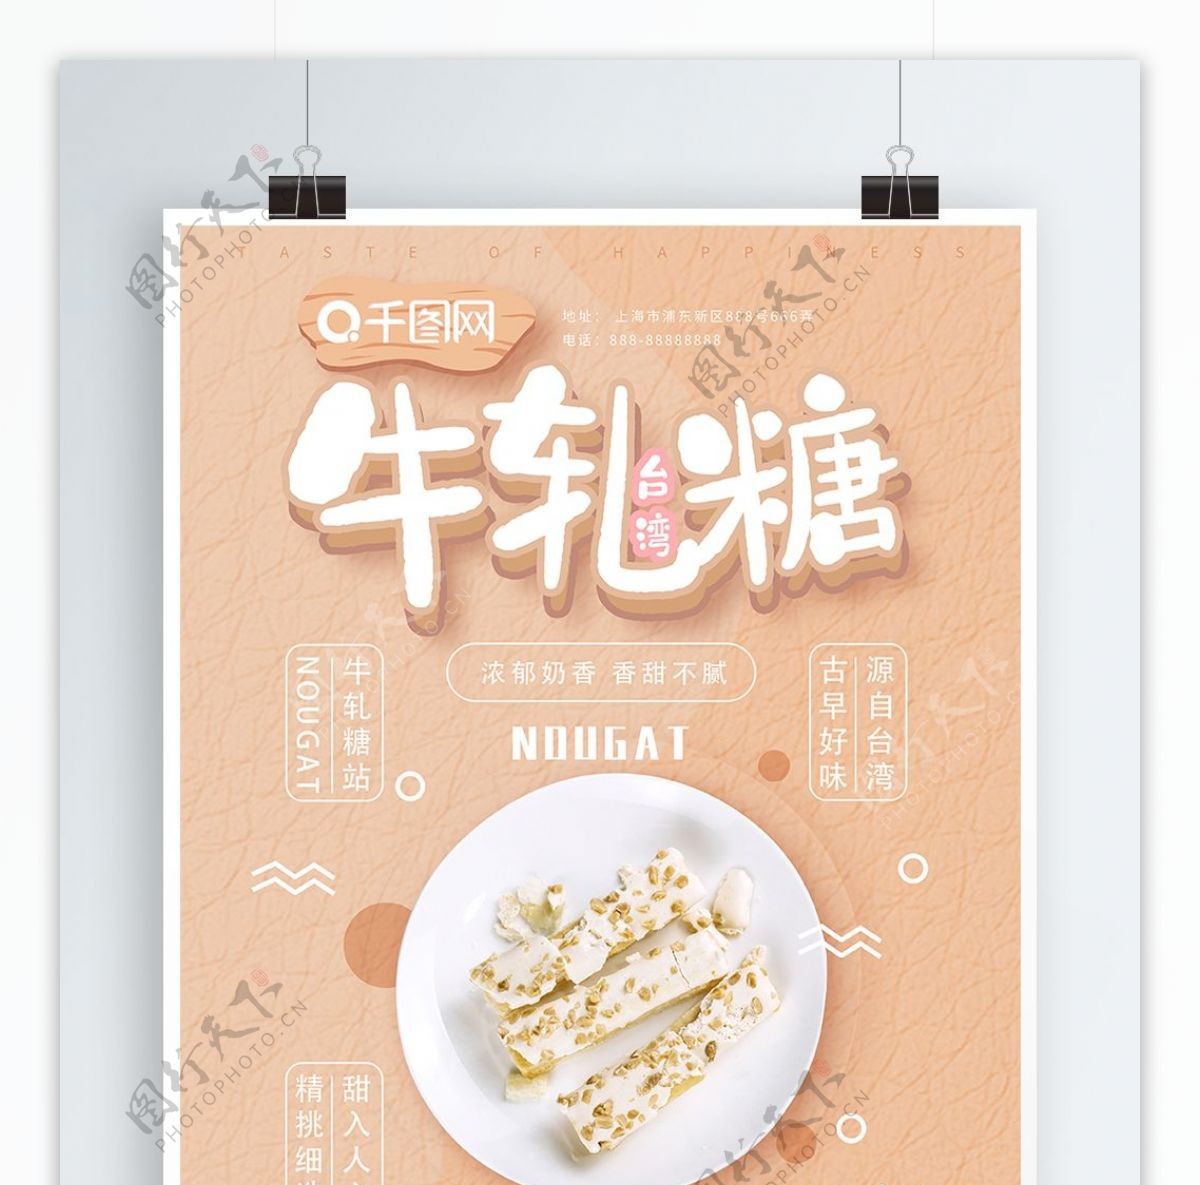 可爱清新台湾牛轧糖美食海报